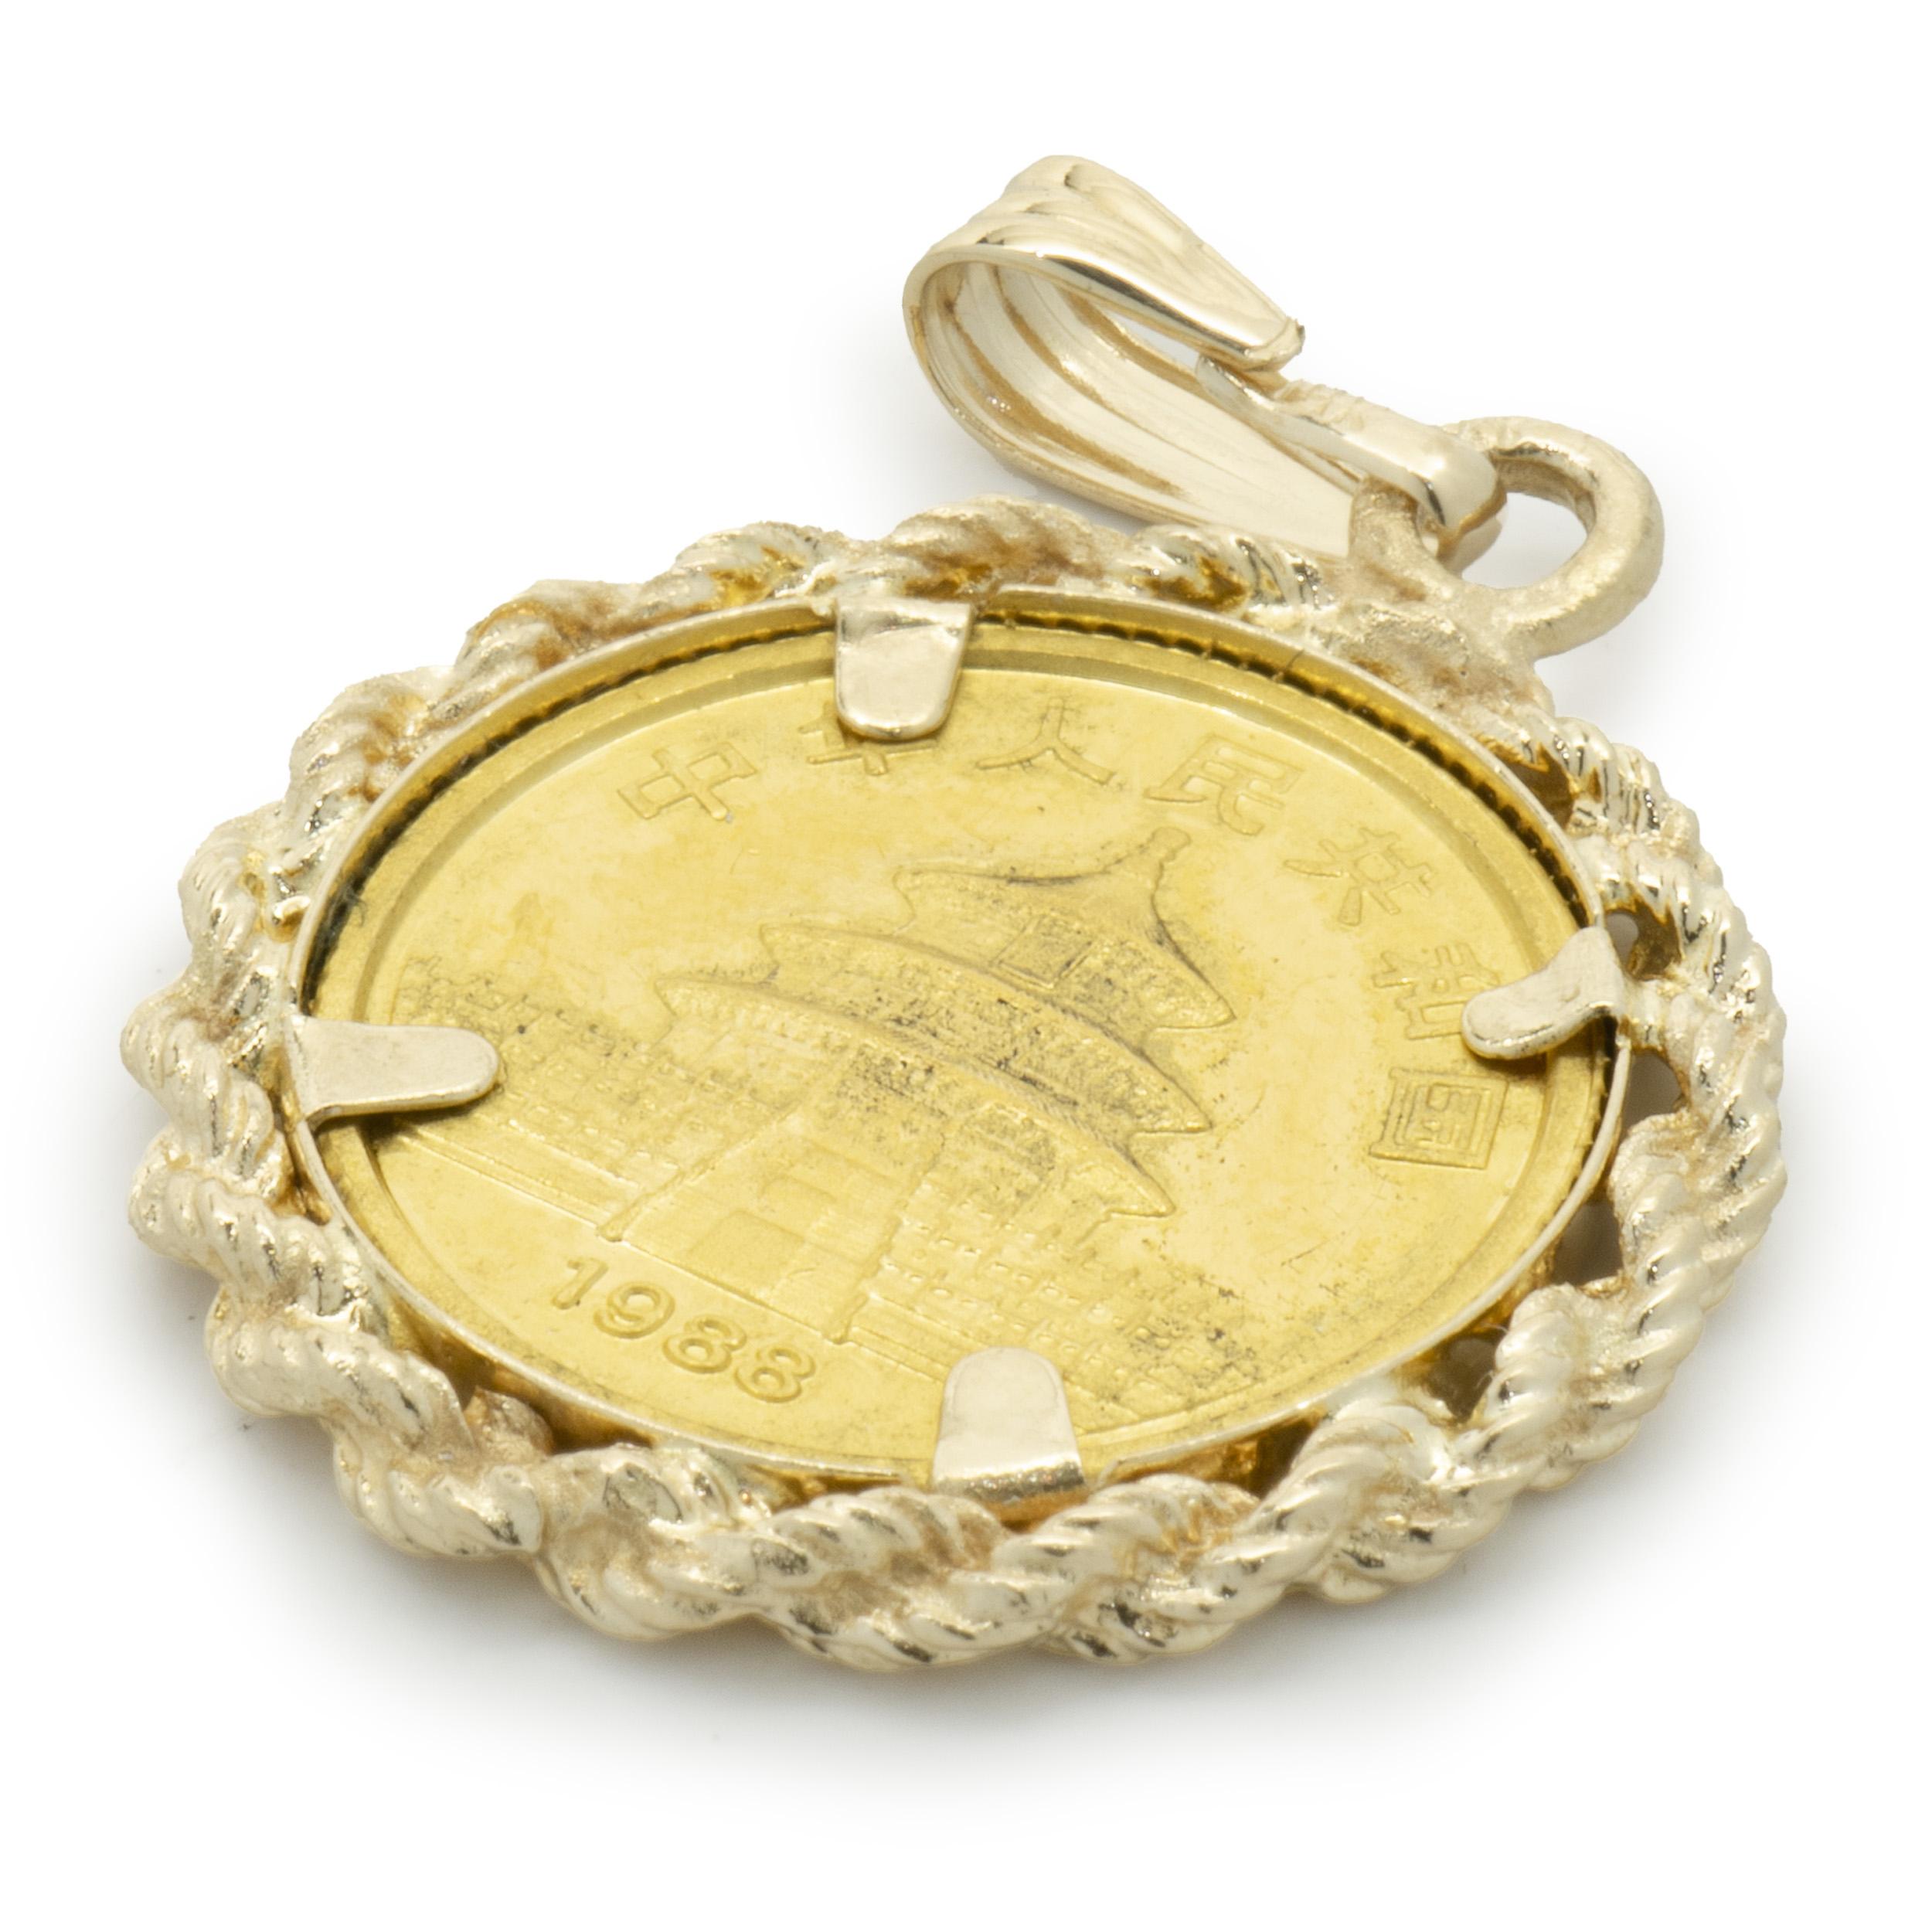 Designer: custom
Material: 14K yellow gold / panda coin
Dimensions: pendant measures 27 x 18mm
Weight: 2.87 grams
